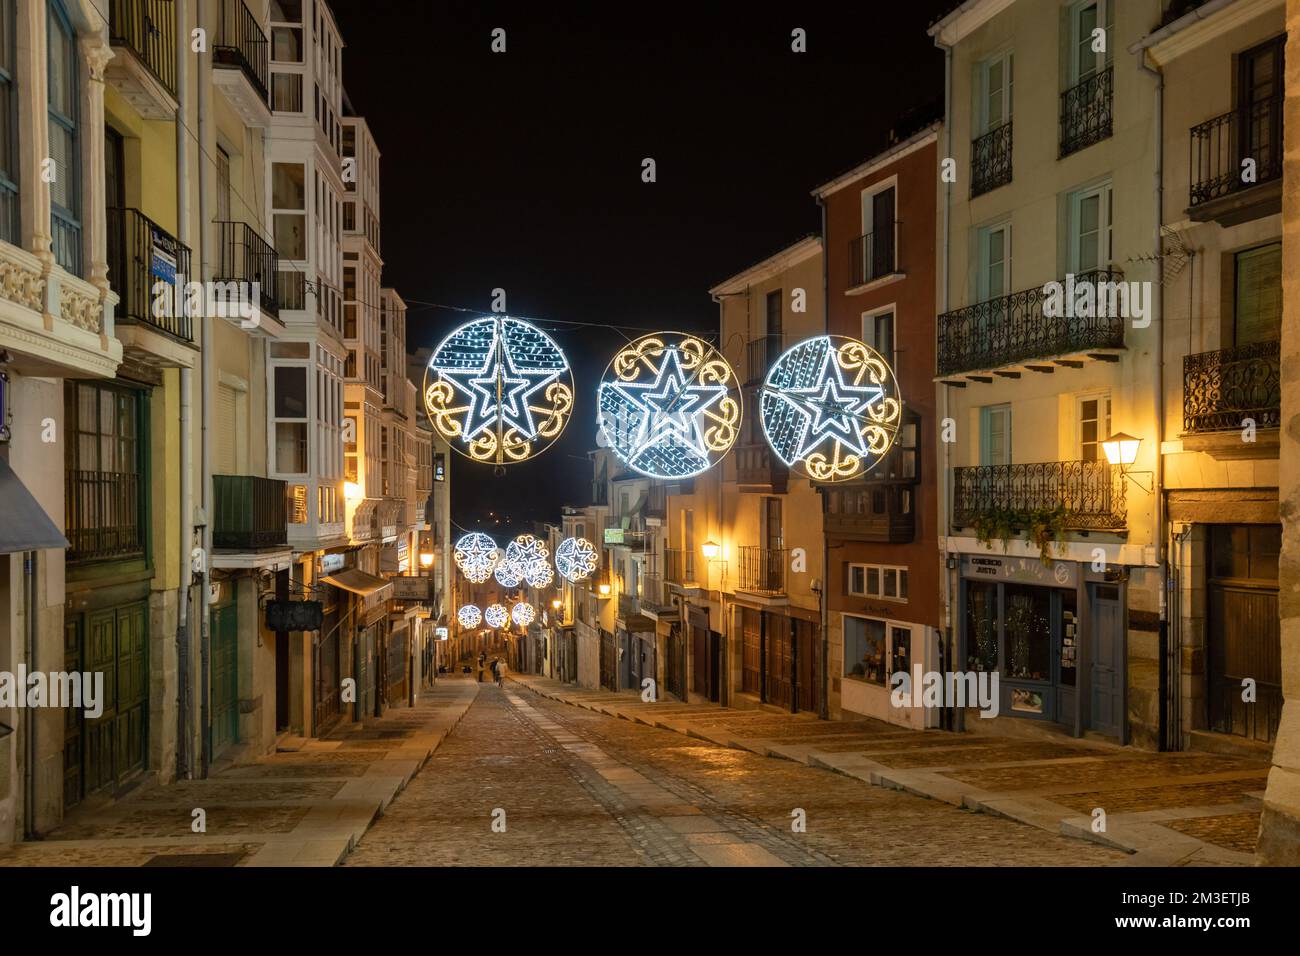 Zamora, calle Balborraz, vestida de Navidad. Una de las calles más bonitas de España. Stock Photo